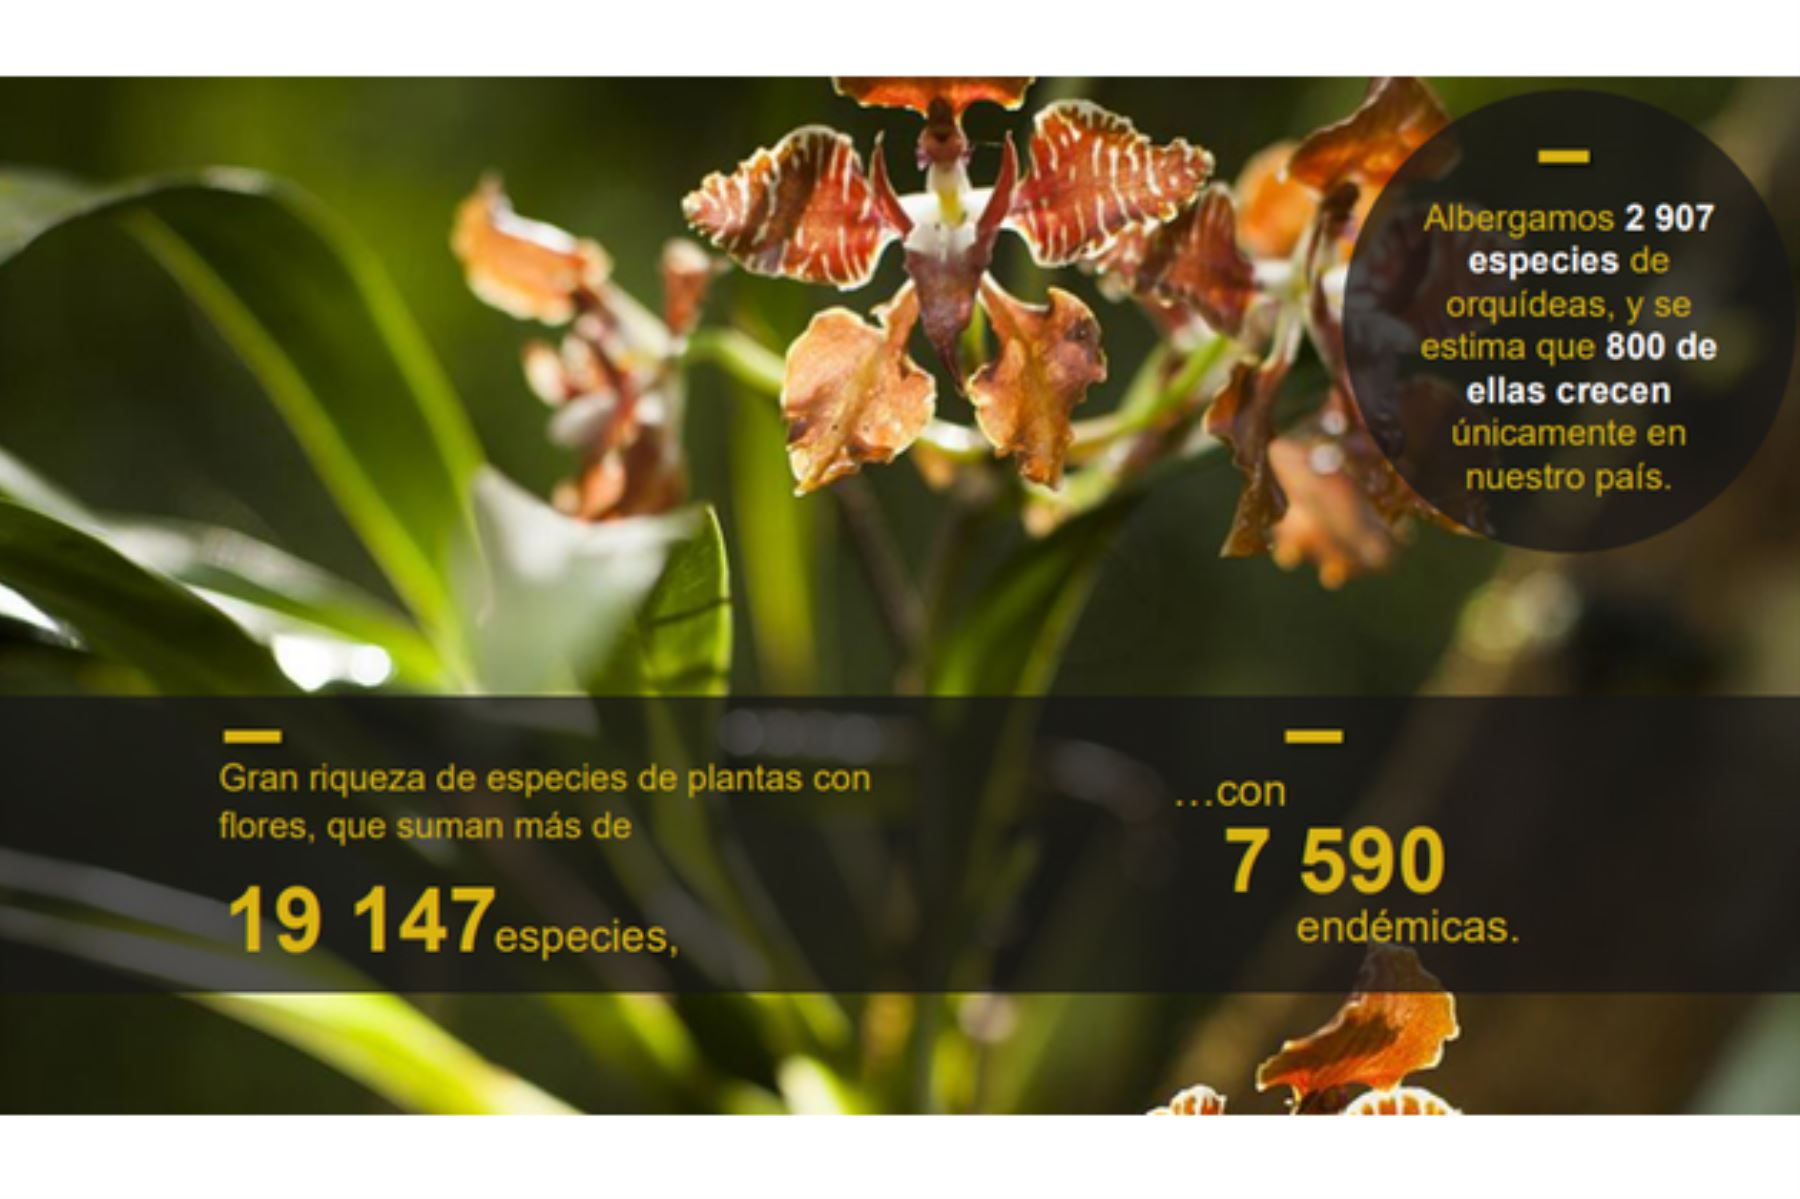 El Perú alberga 2,907 especies de orquídeas, y se estima que 800 de ellas crecen únicamente en el país. Foto: ANDINA/Minam